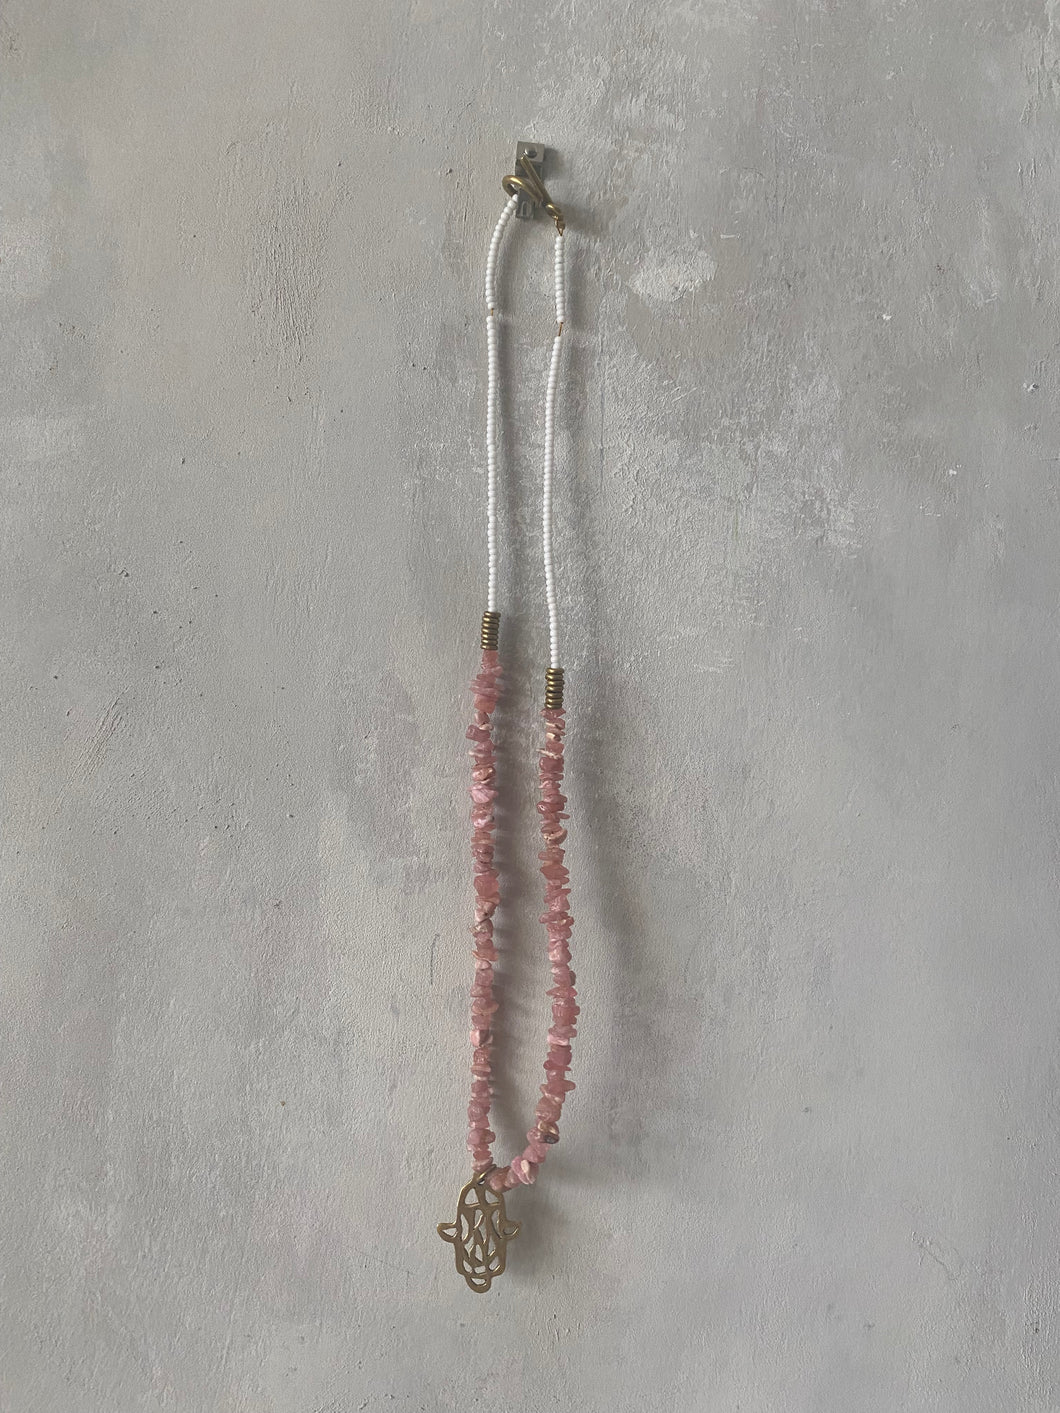 Pwani Necklace with Hamsa Charm